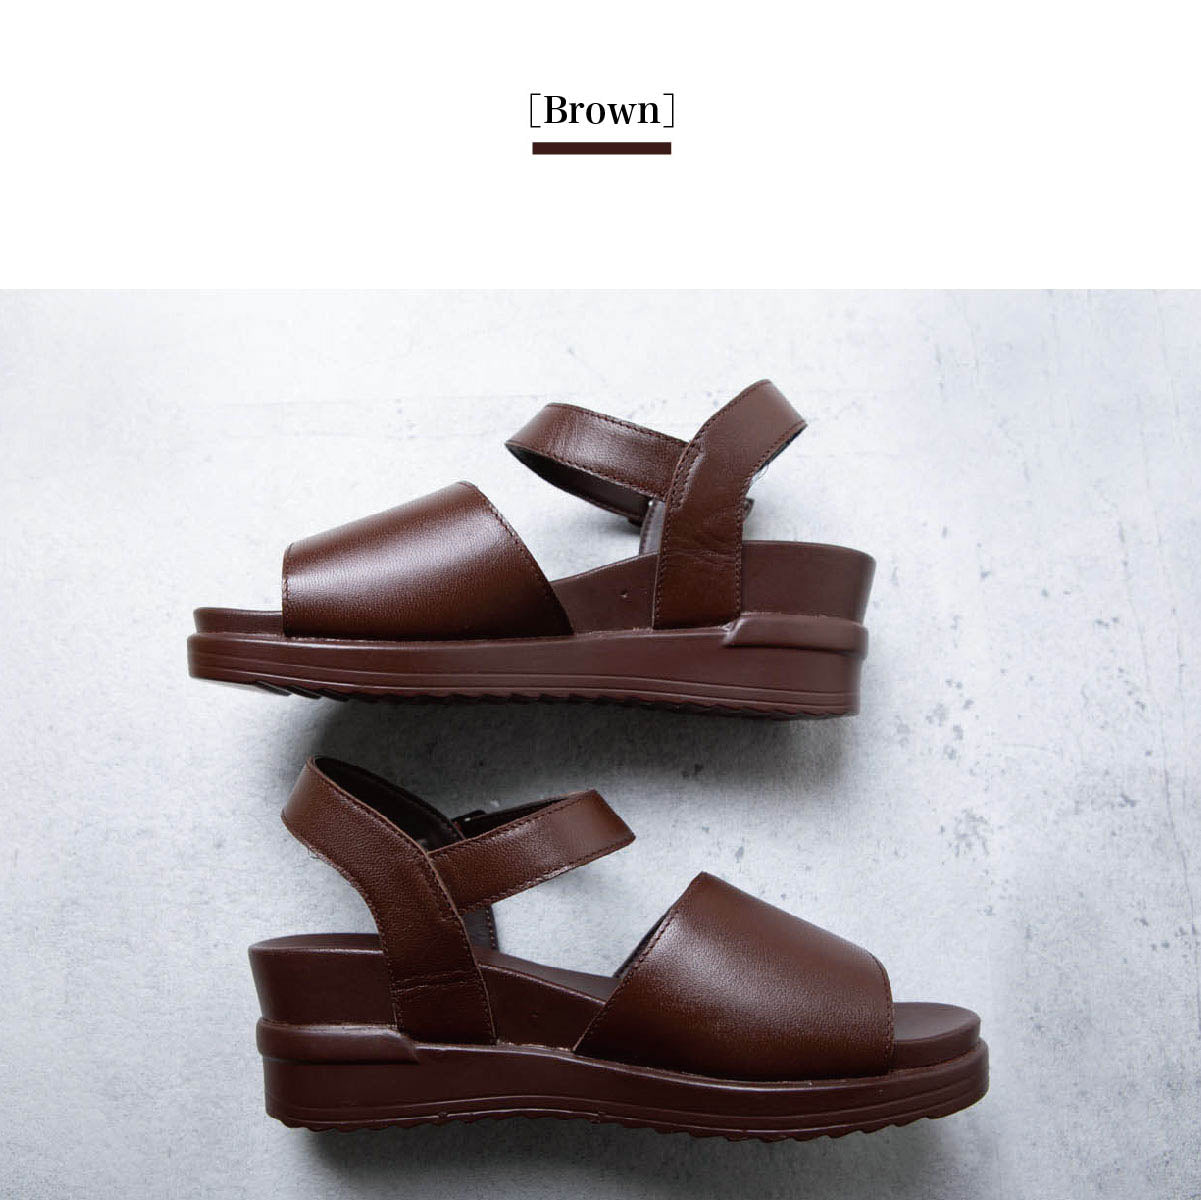 Leather sandals voluminous soles